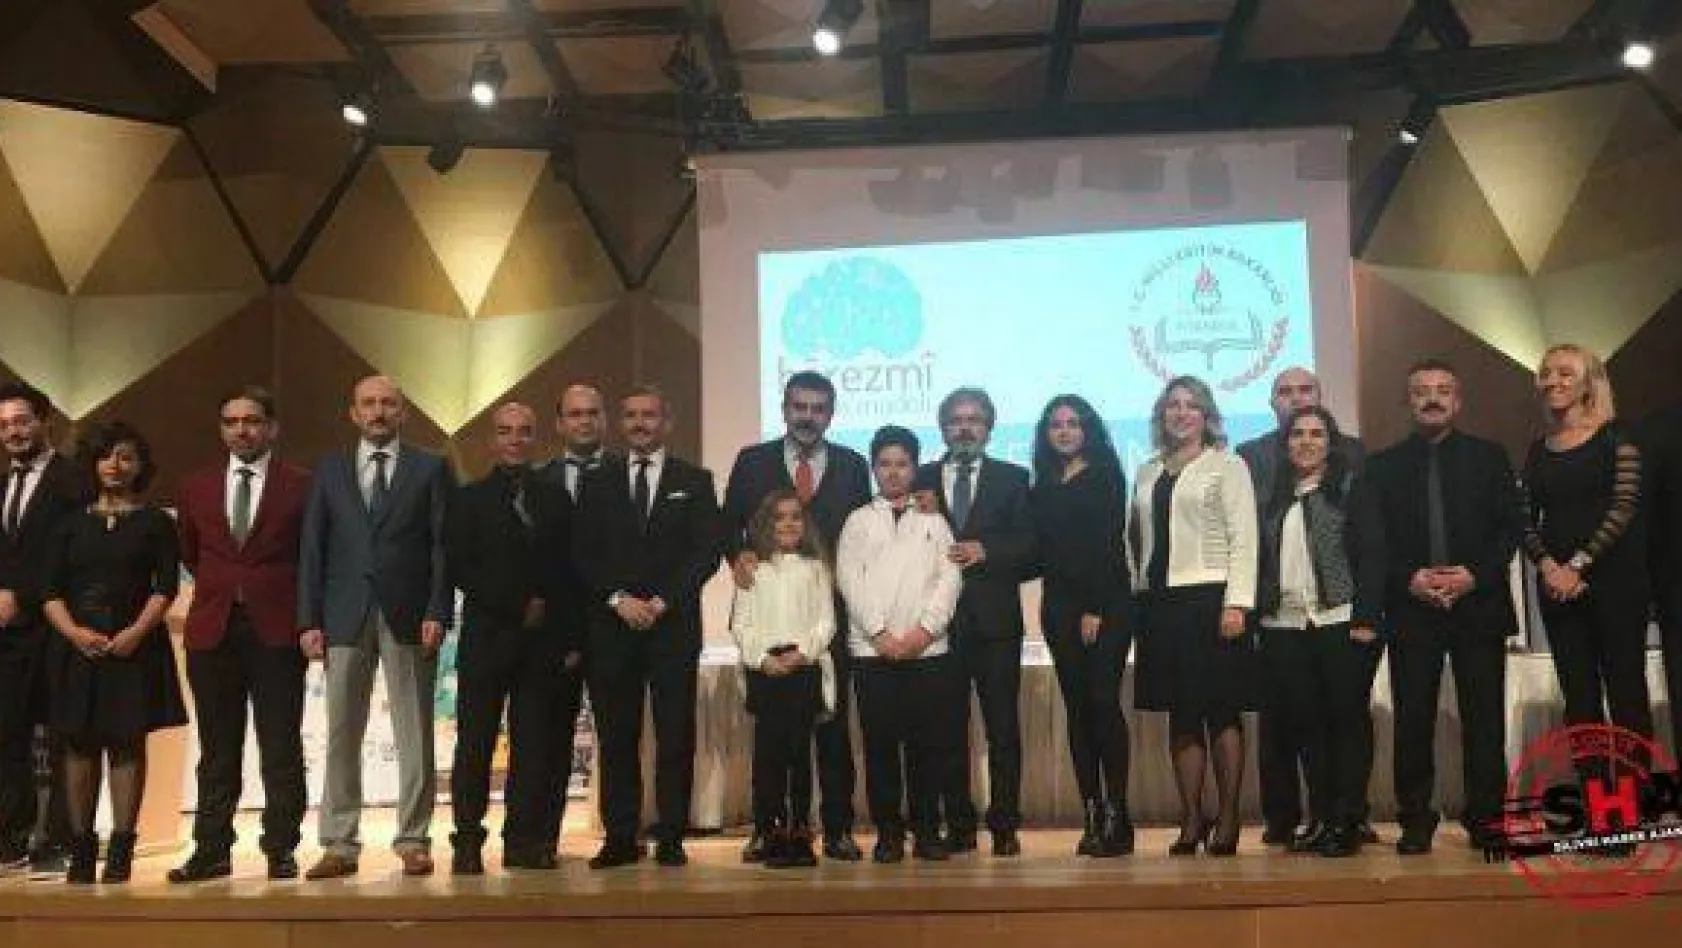 İstanbul BT koordinatörlüğü Harezmî Eğitim Modeli ile birinci oldu.